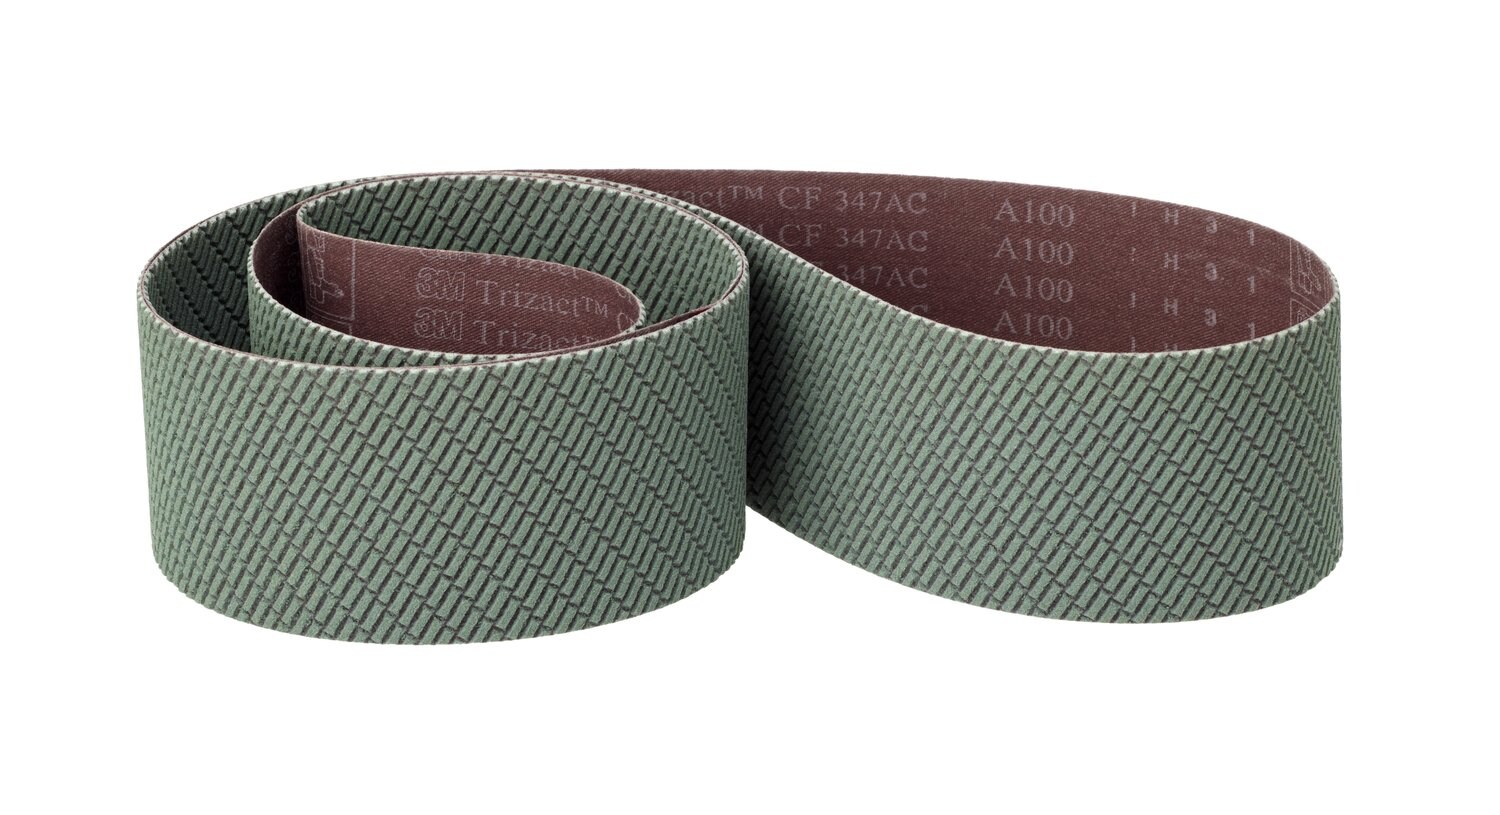 7100191616 - 3M Trizact CF Cloth Belt 347FC, A100 X-weight, 4 in x 90 in, Film-lok,
No Flex